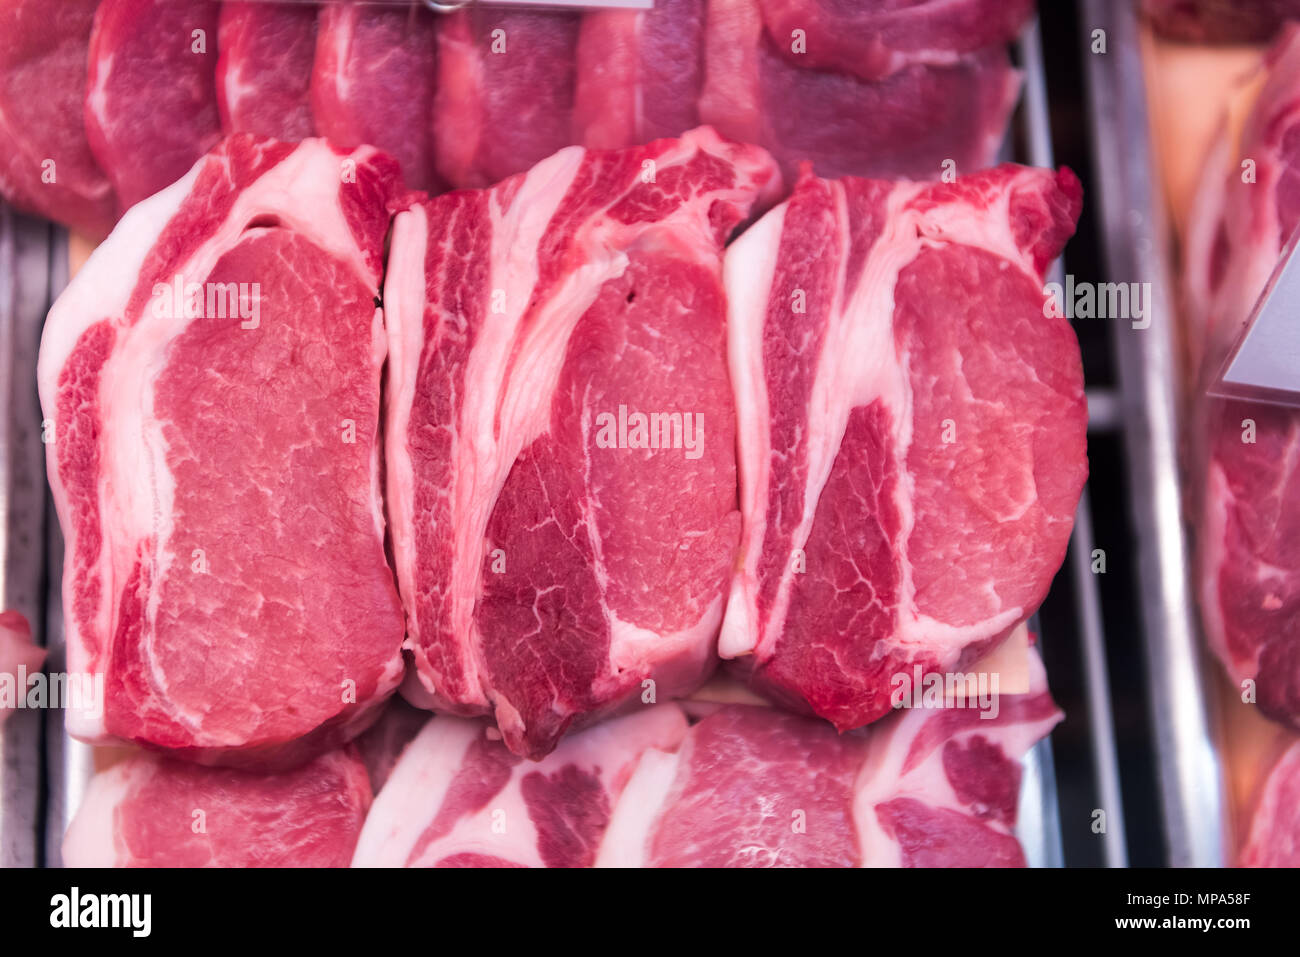 Red rohes Rindfleisch Kotelettstränge ohne Knochen oder fettes Fleisch Schweinefleisch mit Fett in Store Display, Fächer für Verkauf closeup Stockfoto